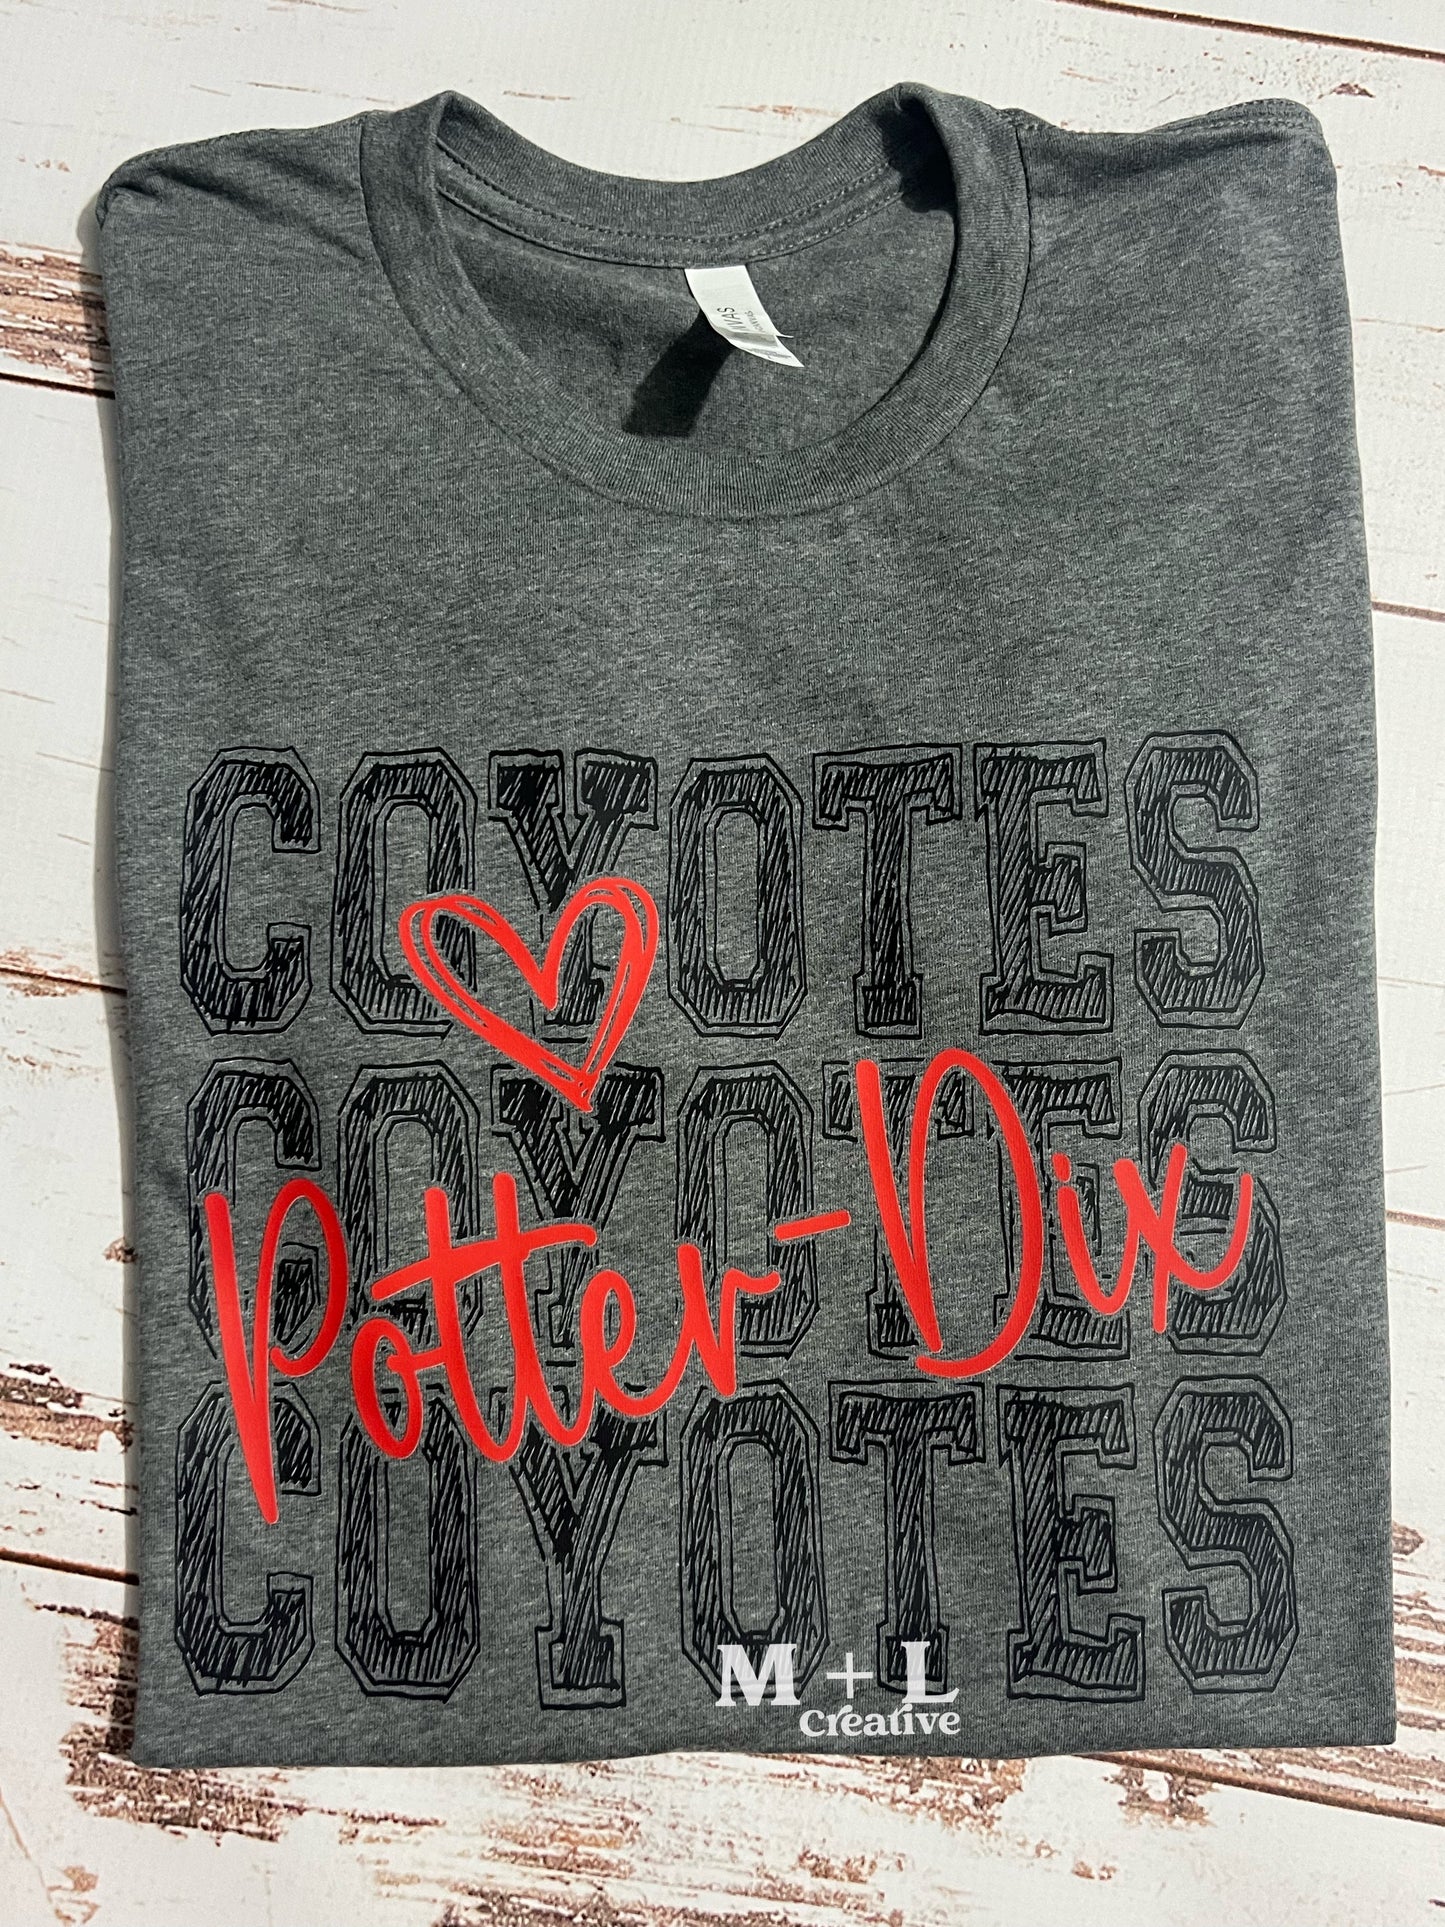 Potter-Dix Coyotes Heart